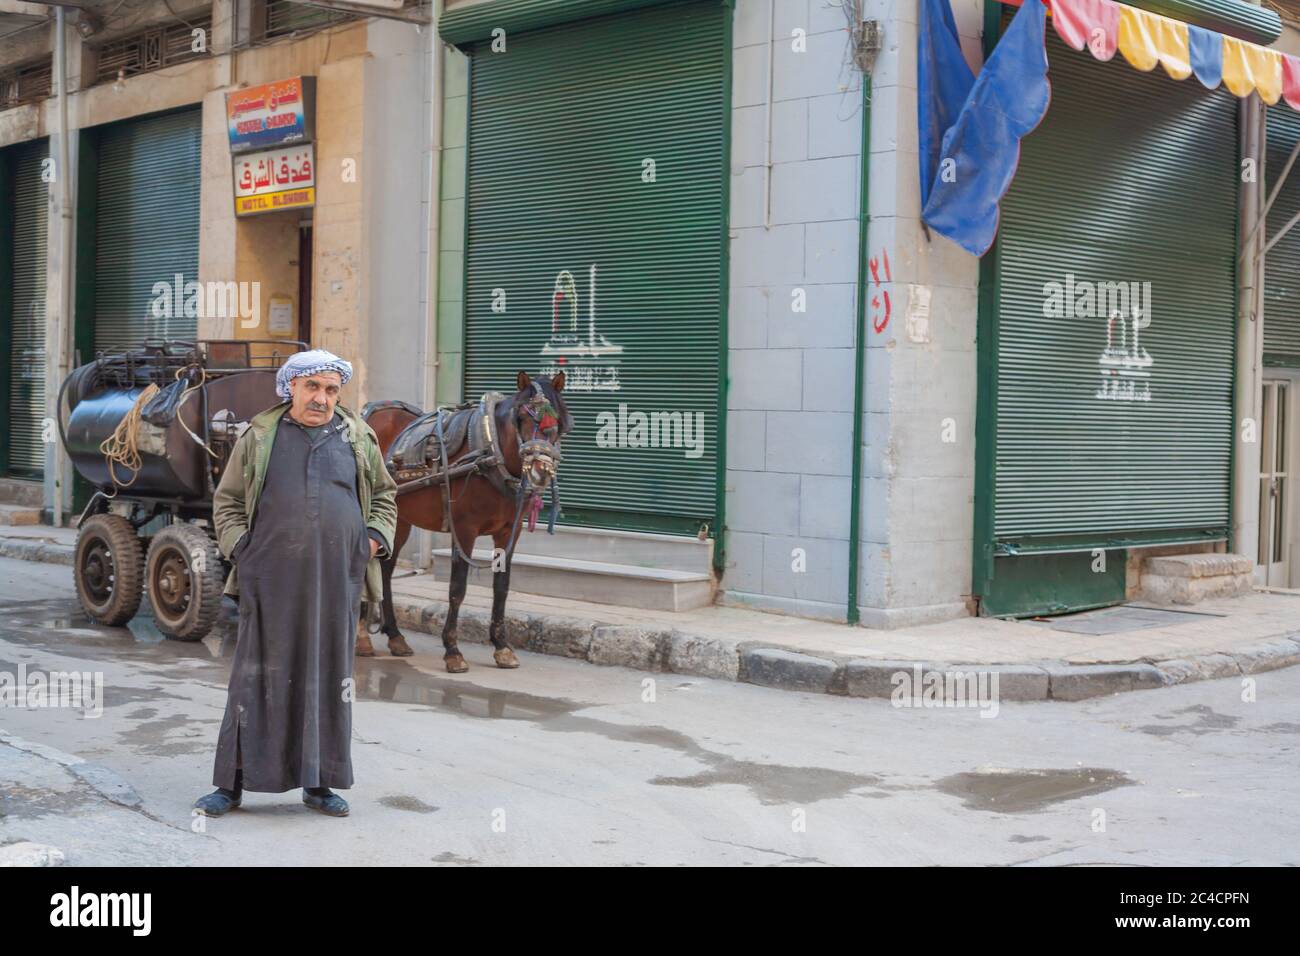 El hombre de la calle, Aleppo, Siria Foto de stock